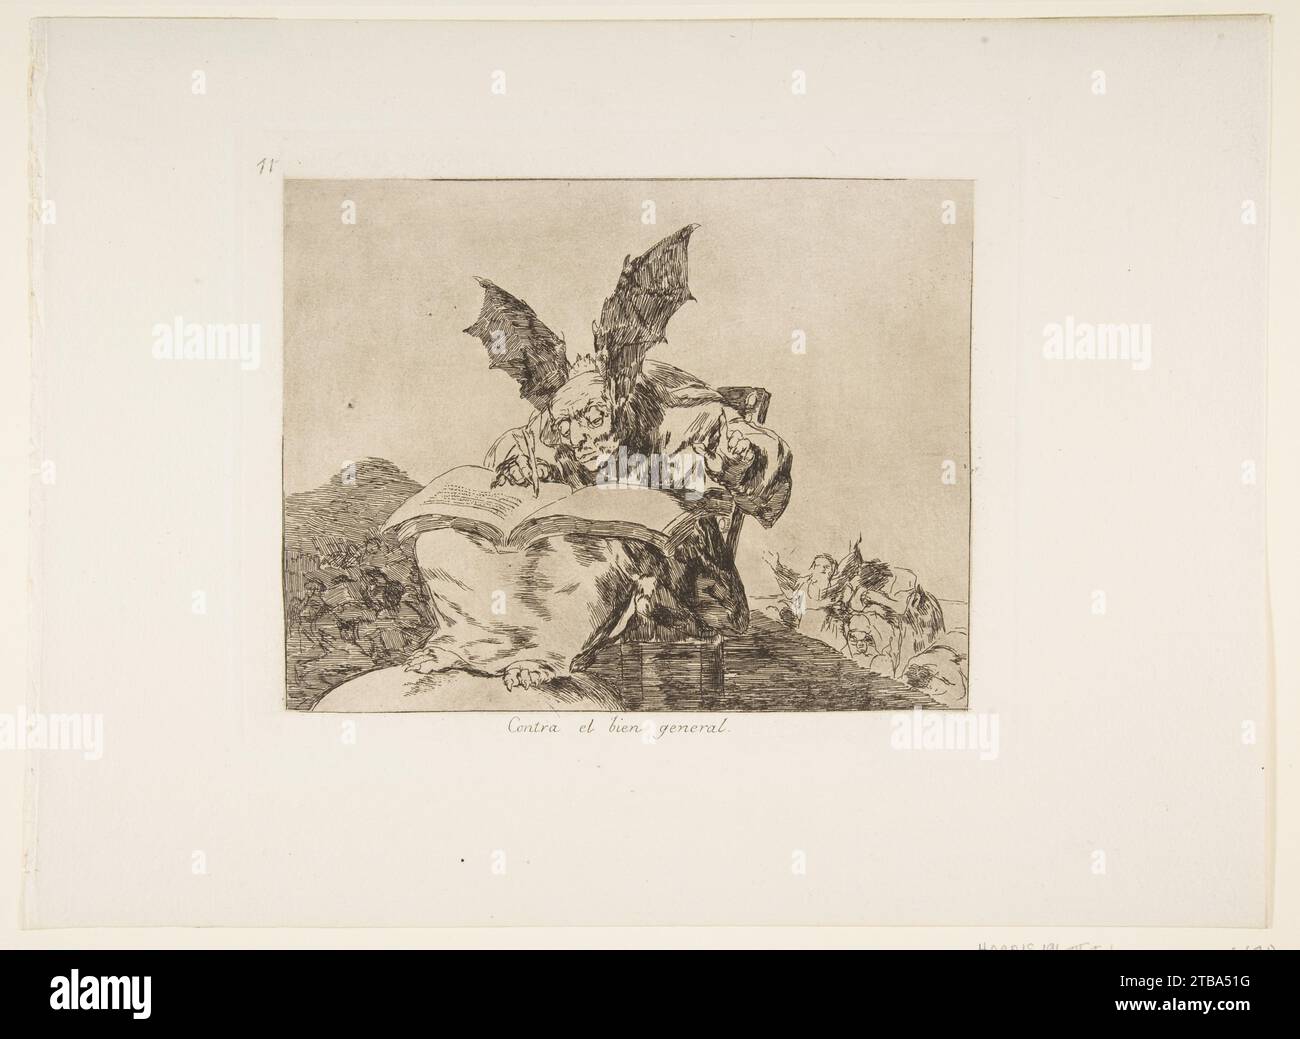 Plate 71 from 'The Disasters of War' (Los Desastres de la Guerra): 'Against the common good' (Contra el bien general) 1922 by Goya (Francisco de Goya y Lucientes) Stock Photo